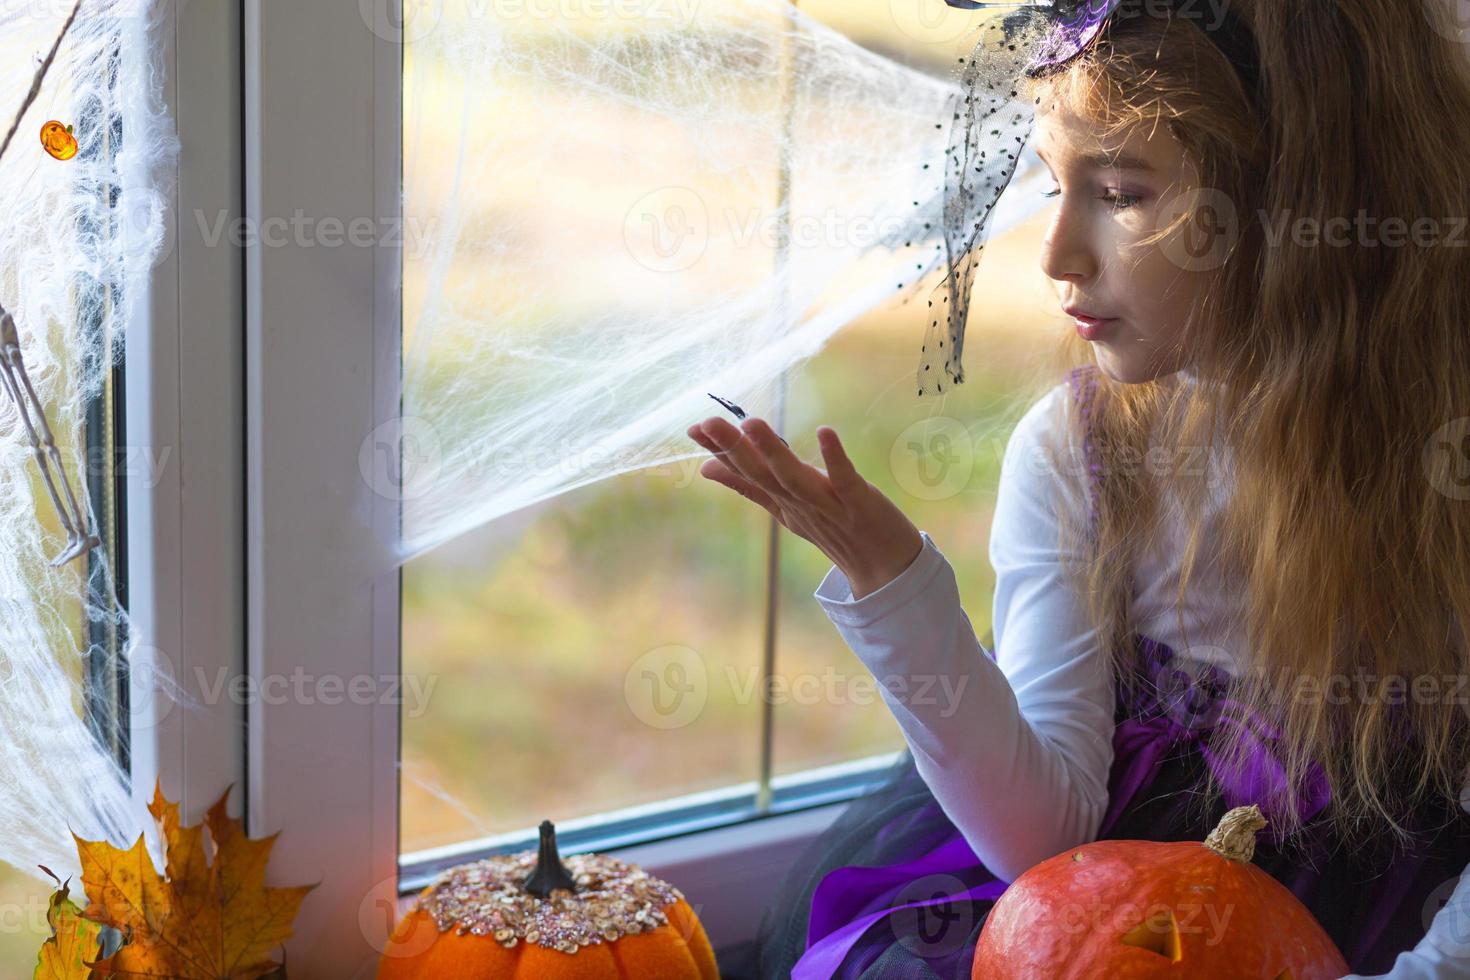 en flicka i en häxdräkt på fönsterbrädan vid fönstret leker med ett spindelnät och en spindel och dekorerar huset för halloween-semestern. fruktansvärda landskap, rädsla och fasa, pumpor foto